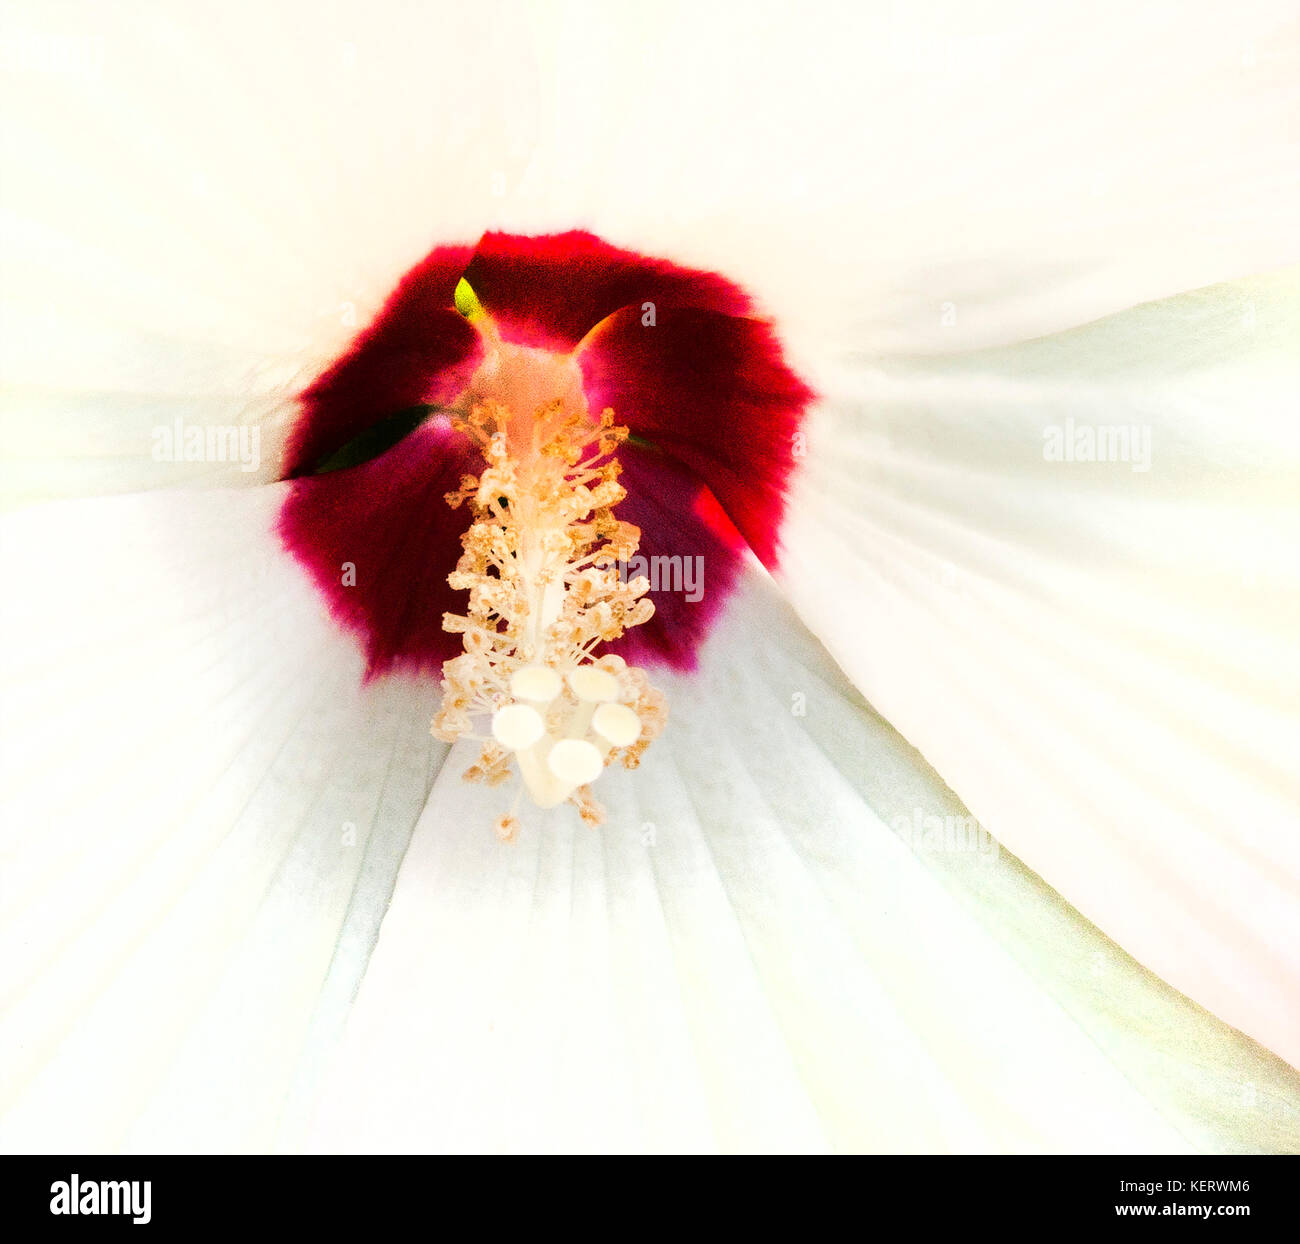 Fiori di ibisco, rosso e petali di colore bianco Foto Stock